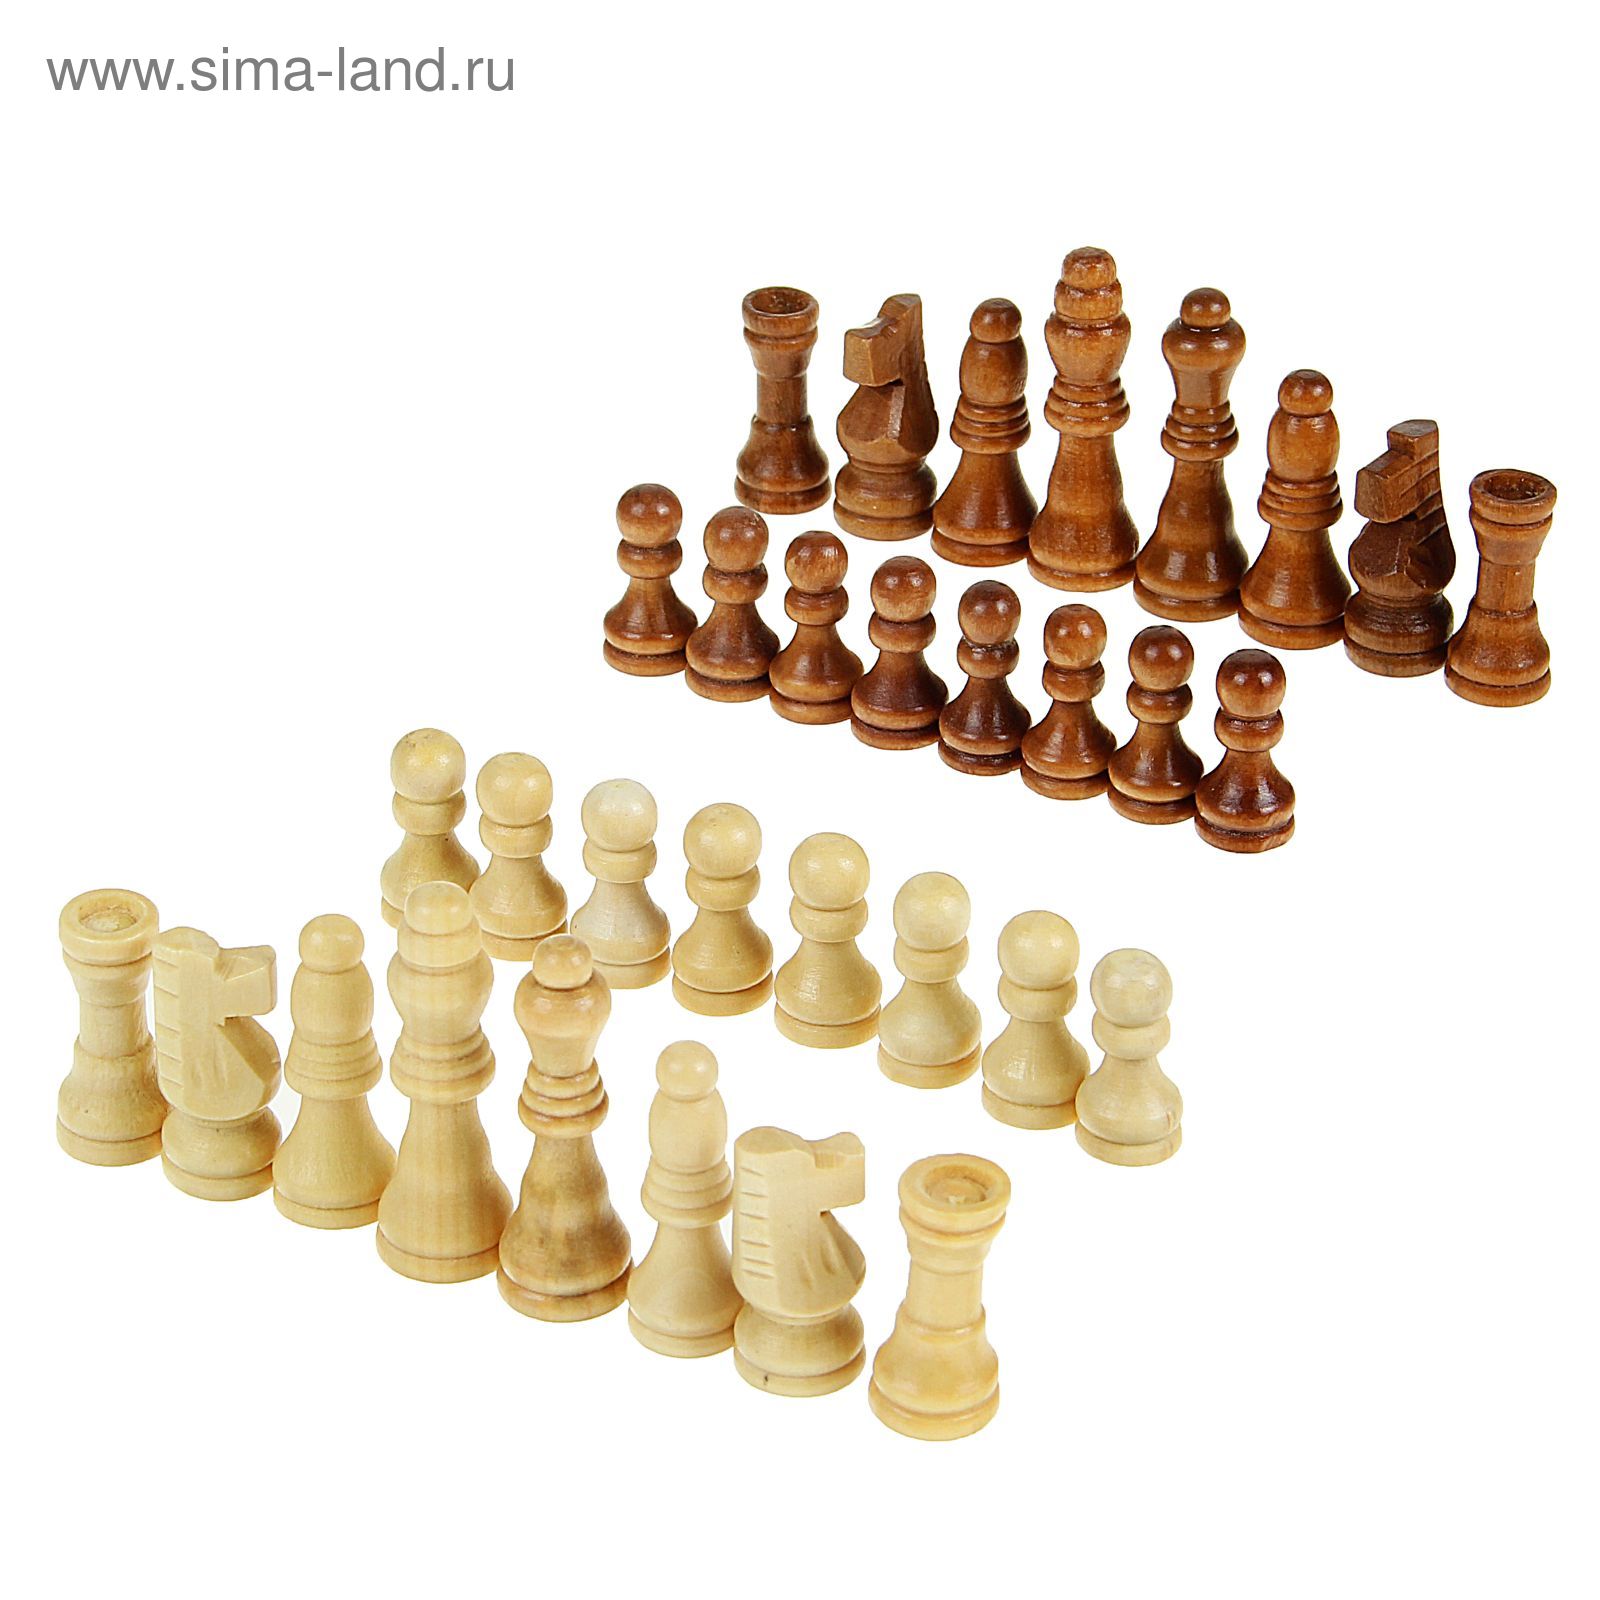 Шахматные фигуры деревянные, 5 см, в пакете